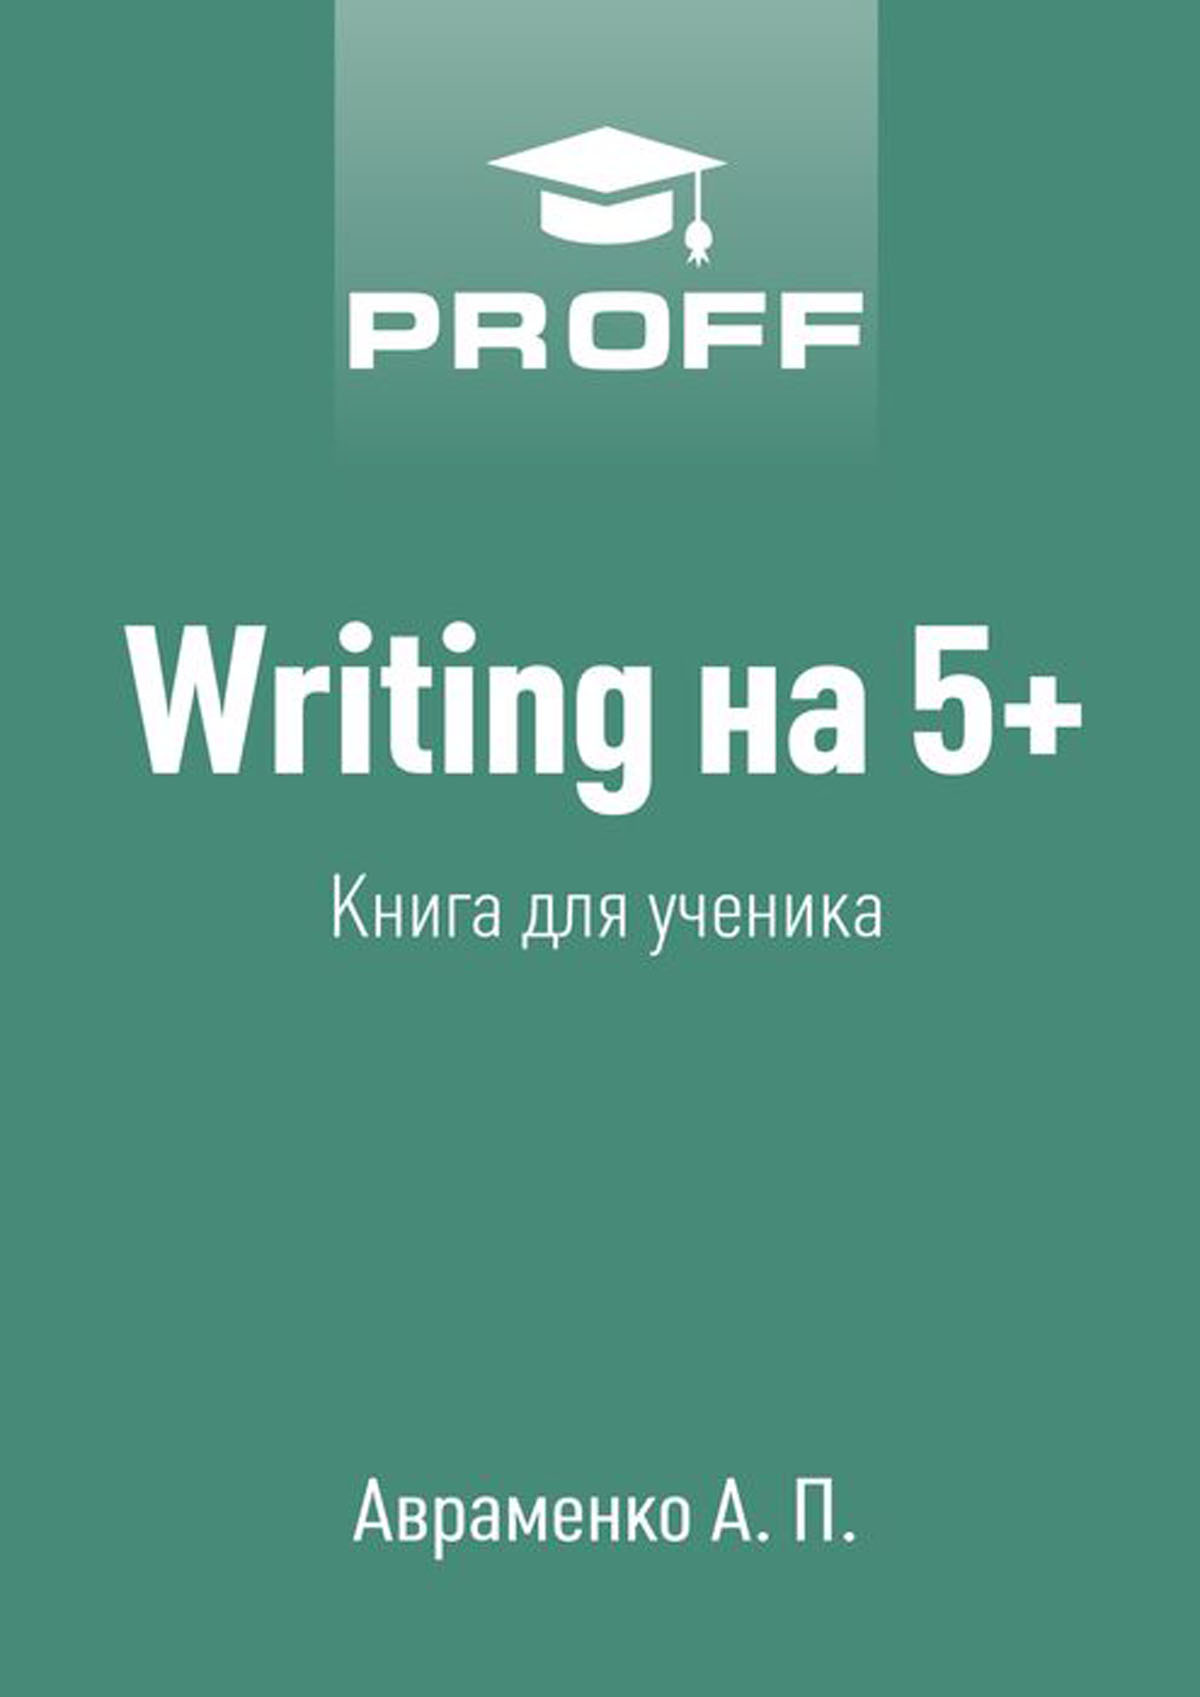 Book was written. Книги.5+.